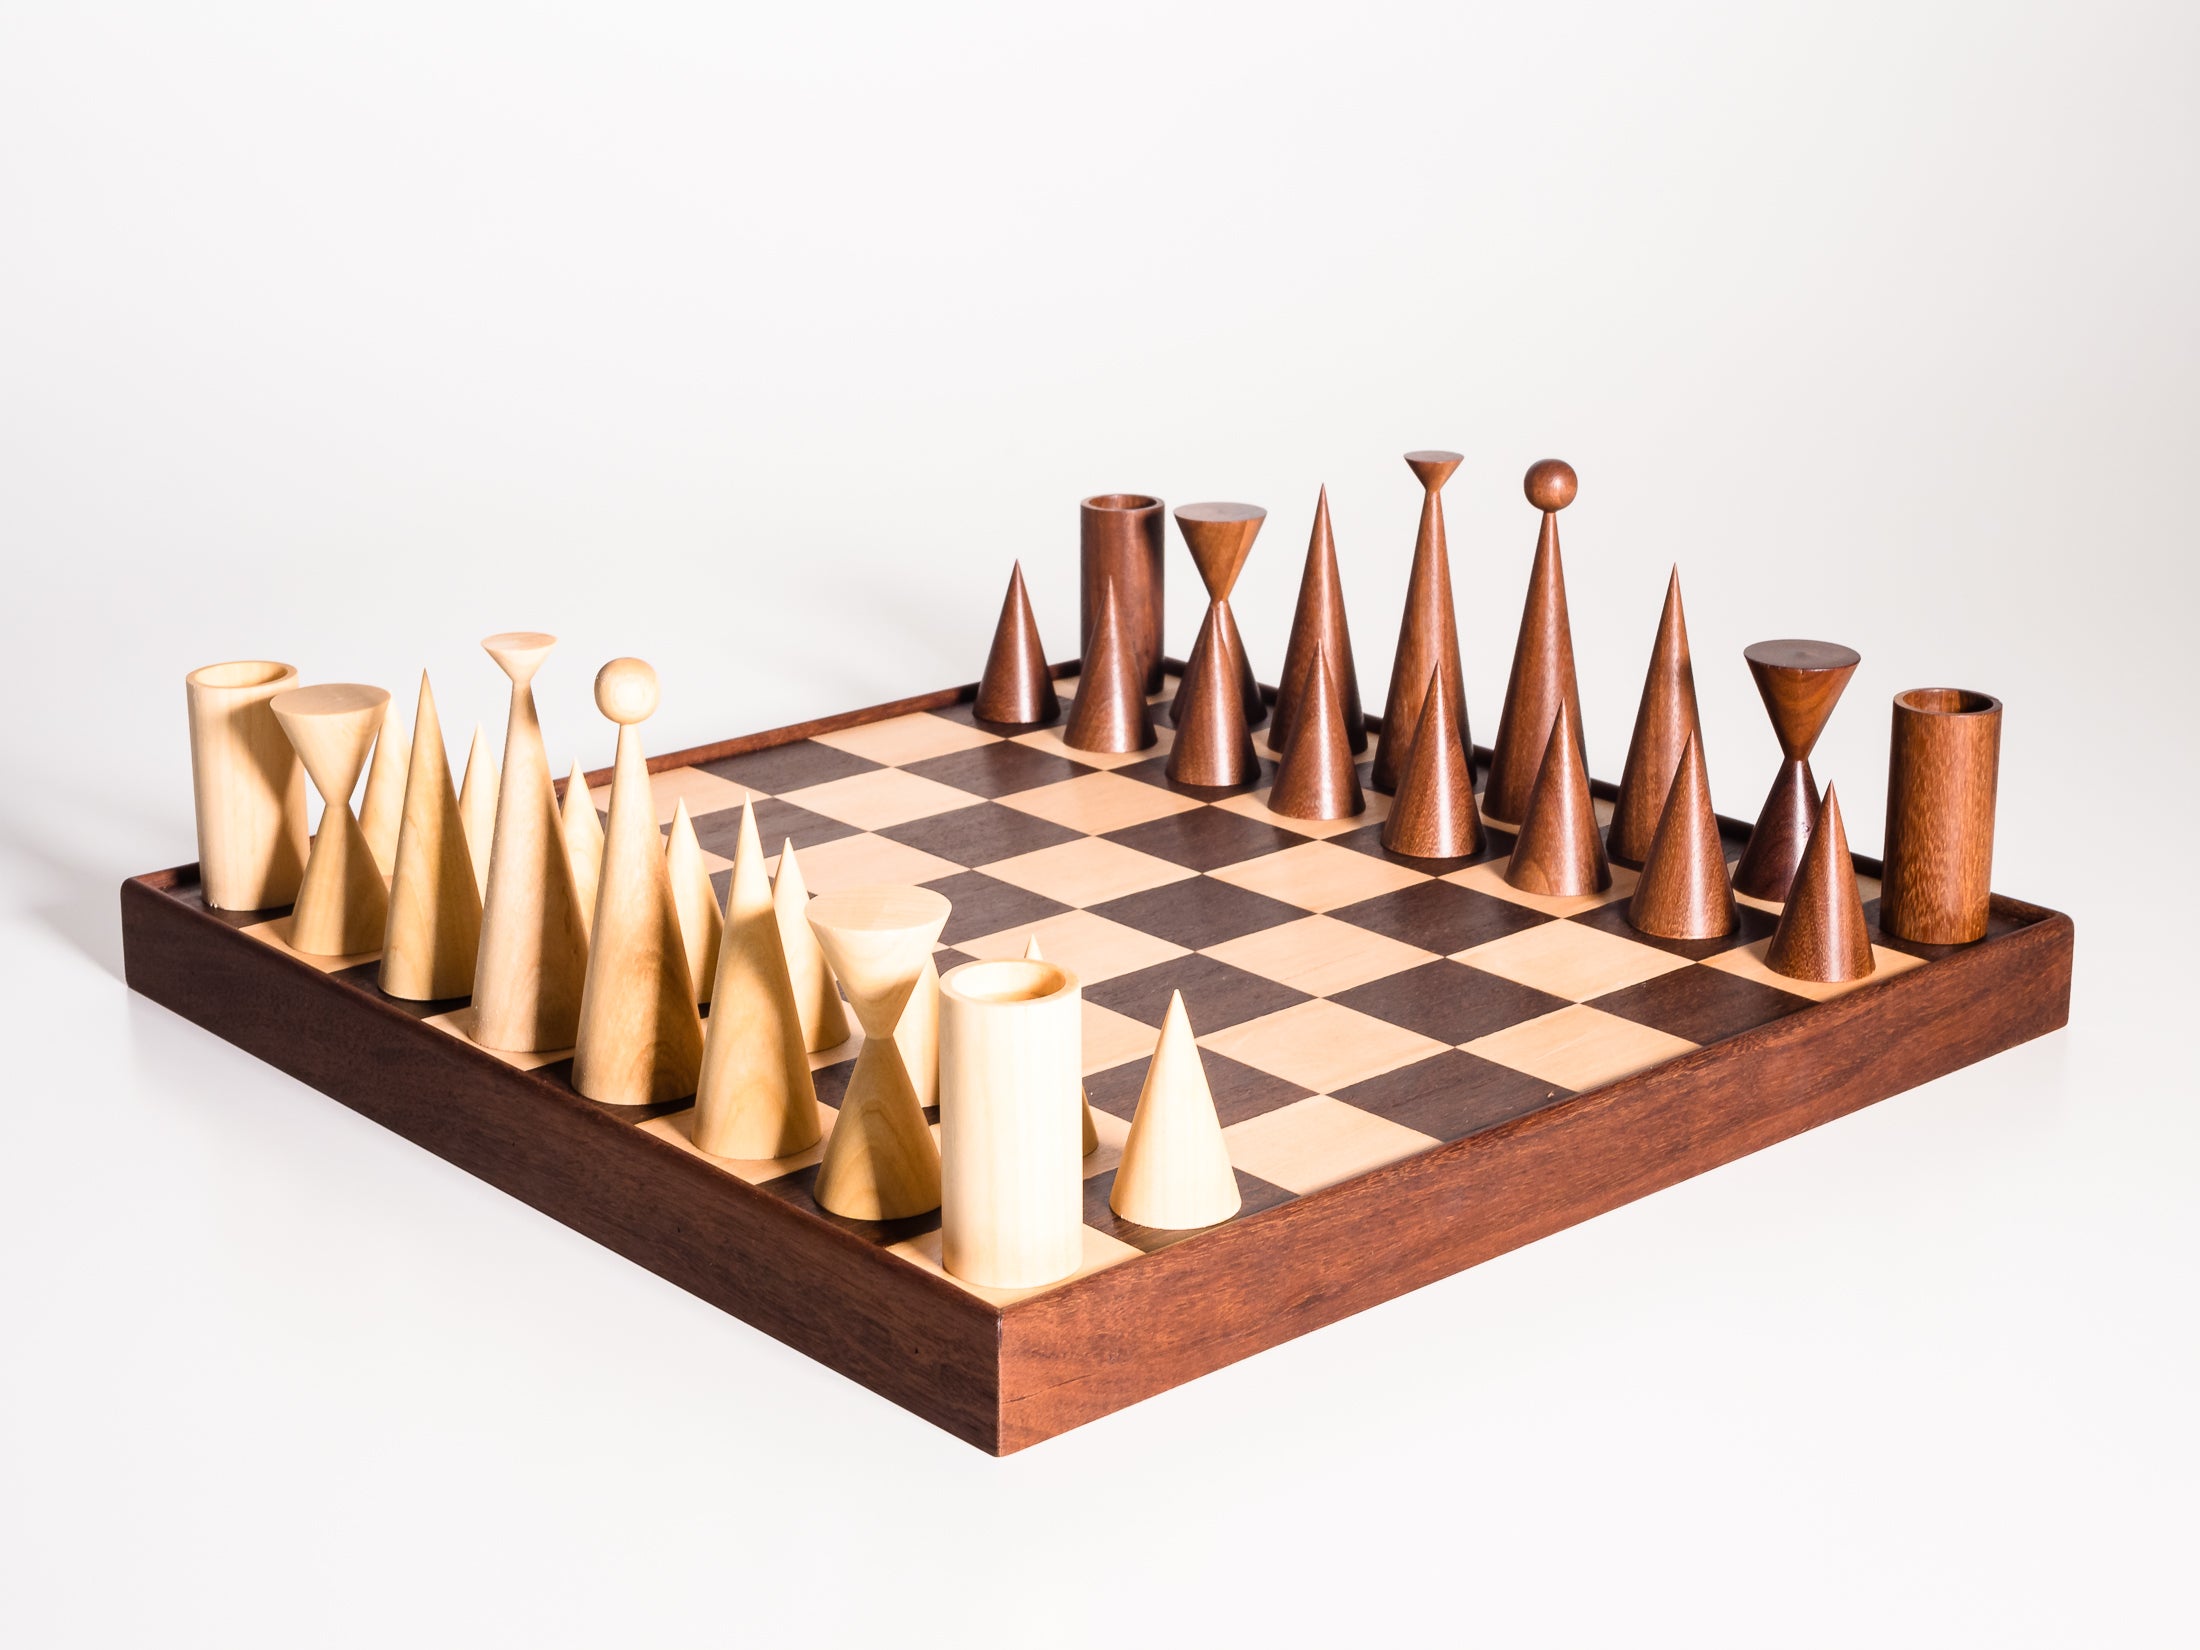 Tabuleiro de xadrez vazio sem peças de xadrez